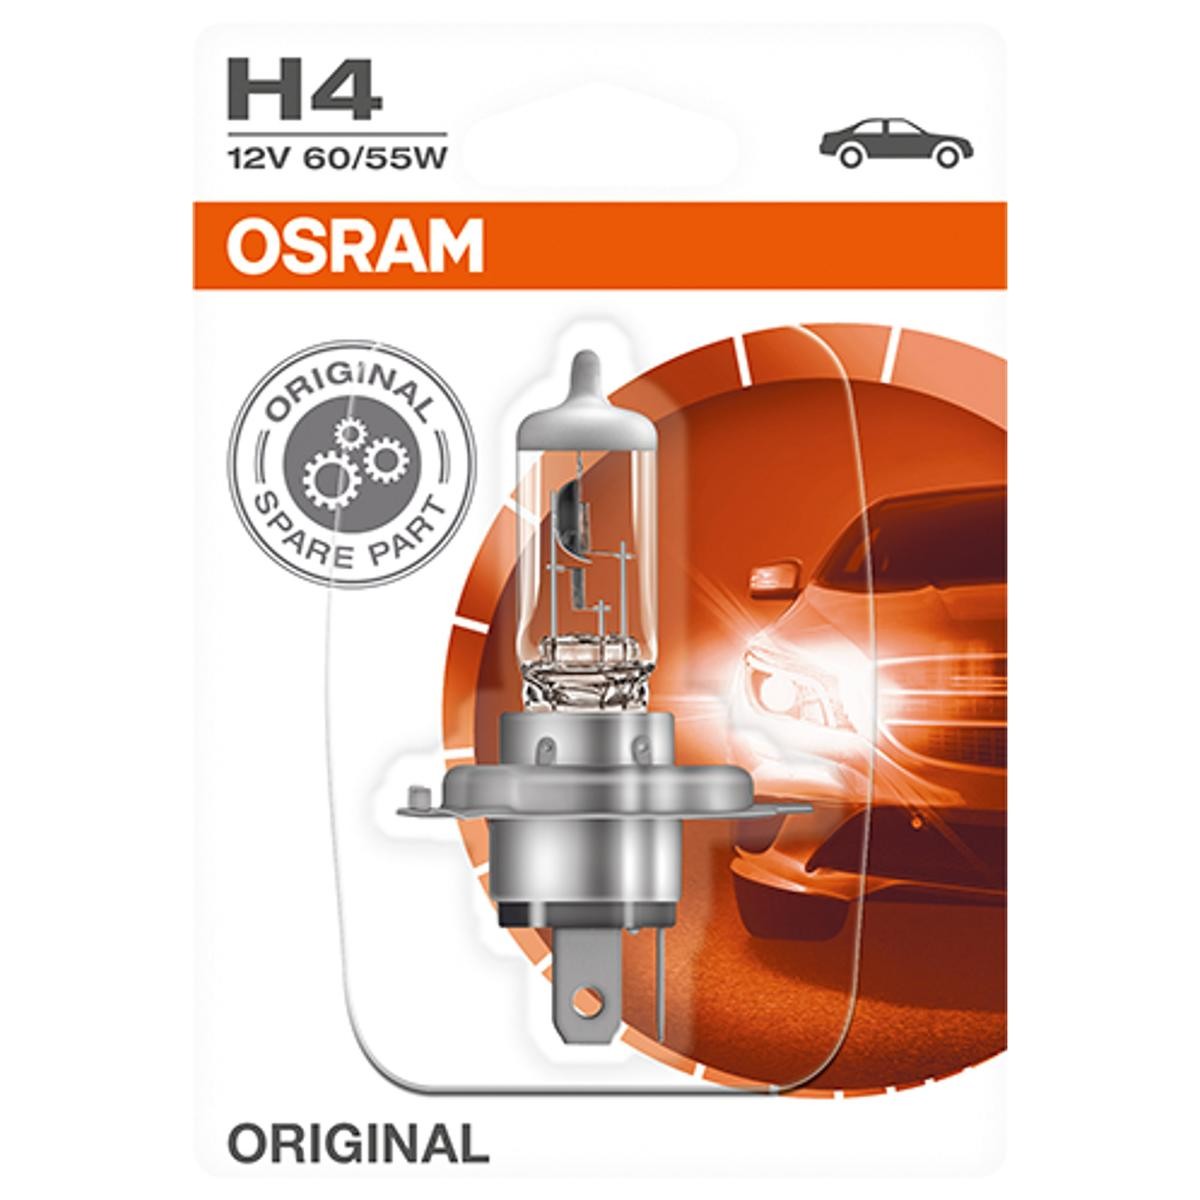 Nebelscheinwerfer Glühlampe Autobianchi in Original Qualität OSRAM 64193-01B